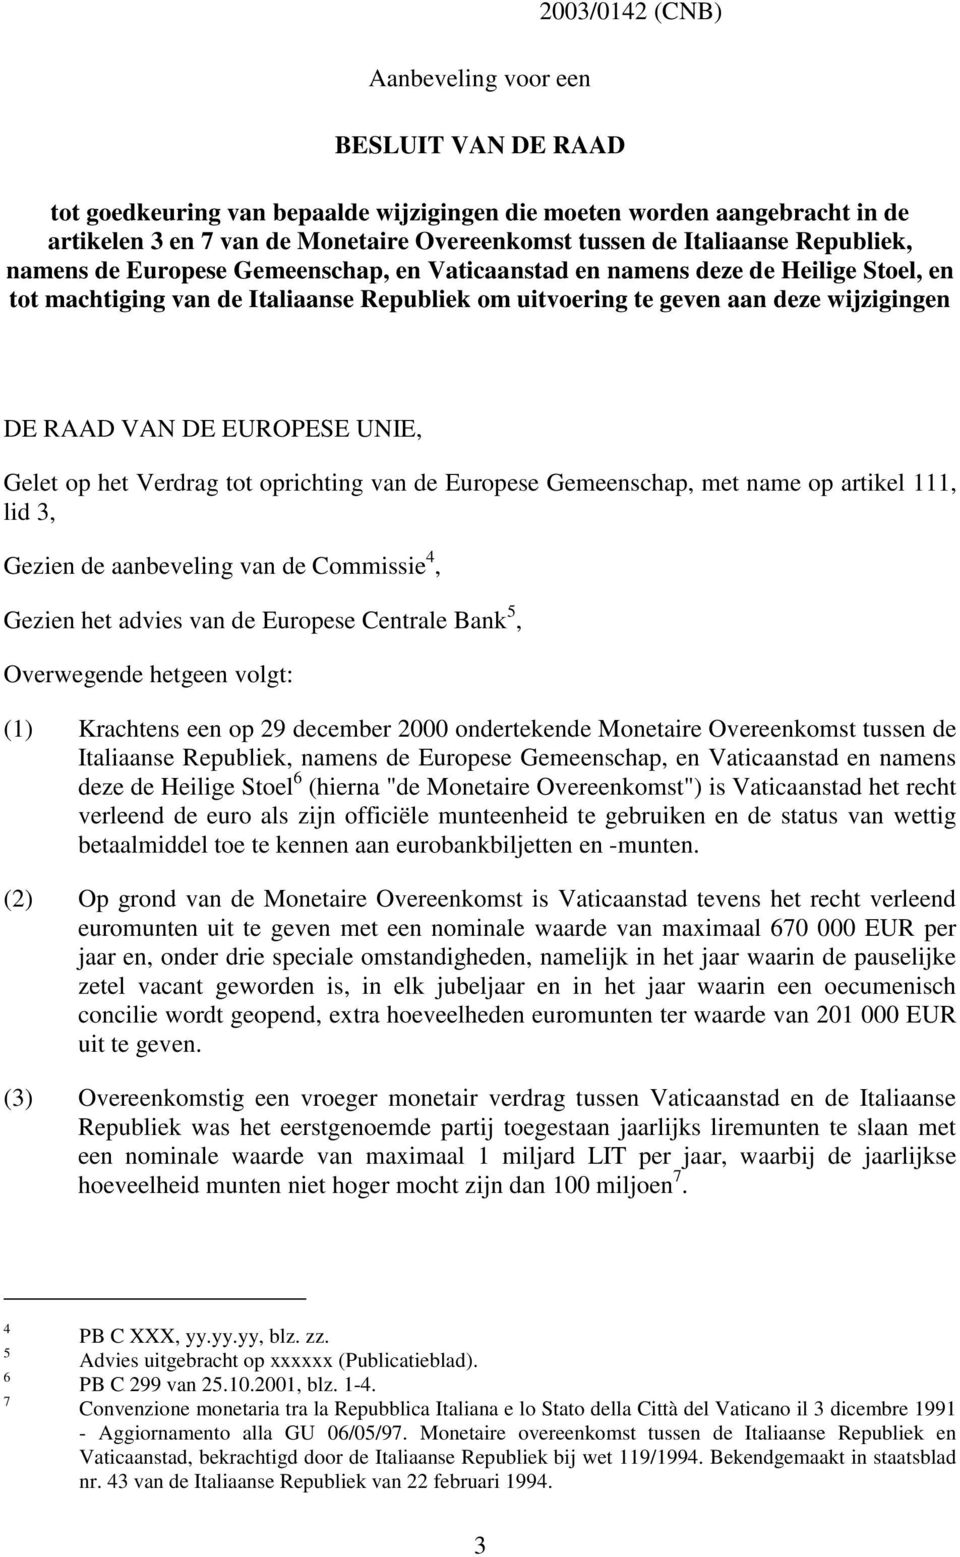 RAAD VAN DE EUROPESE UNIE, Gelet op het Verdrag tot oprichting van de Europese Gemeenschap, met name op artikel 111, lid 3, Gezien de aanbeveling van de Commissie 4, Gezien het advies van de Europese